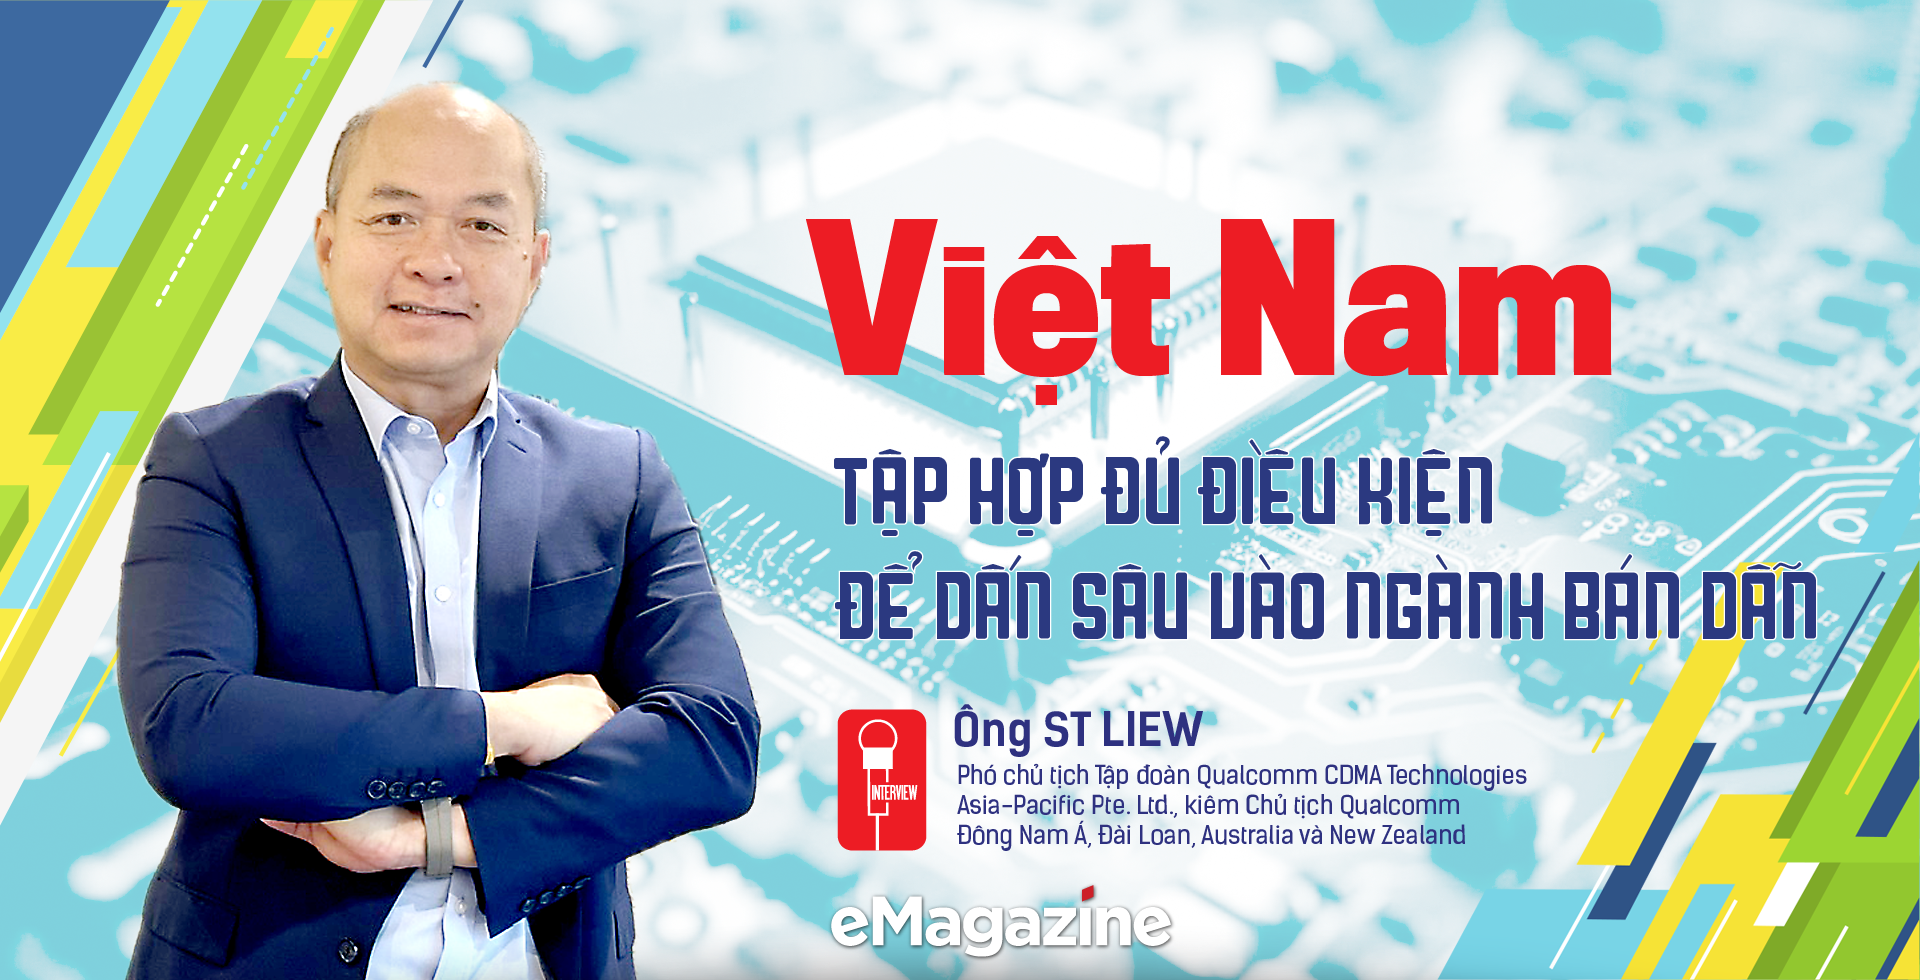 Việt Nam hội tụ đủ điều kiện để dấn sâu vào ngành bán dẫn - Ảnh 1